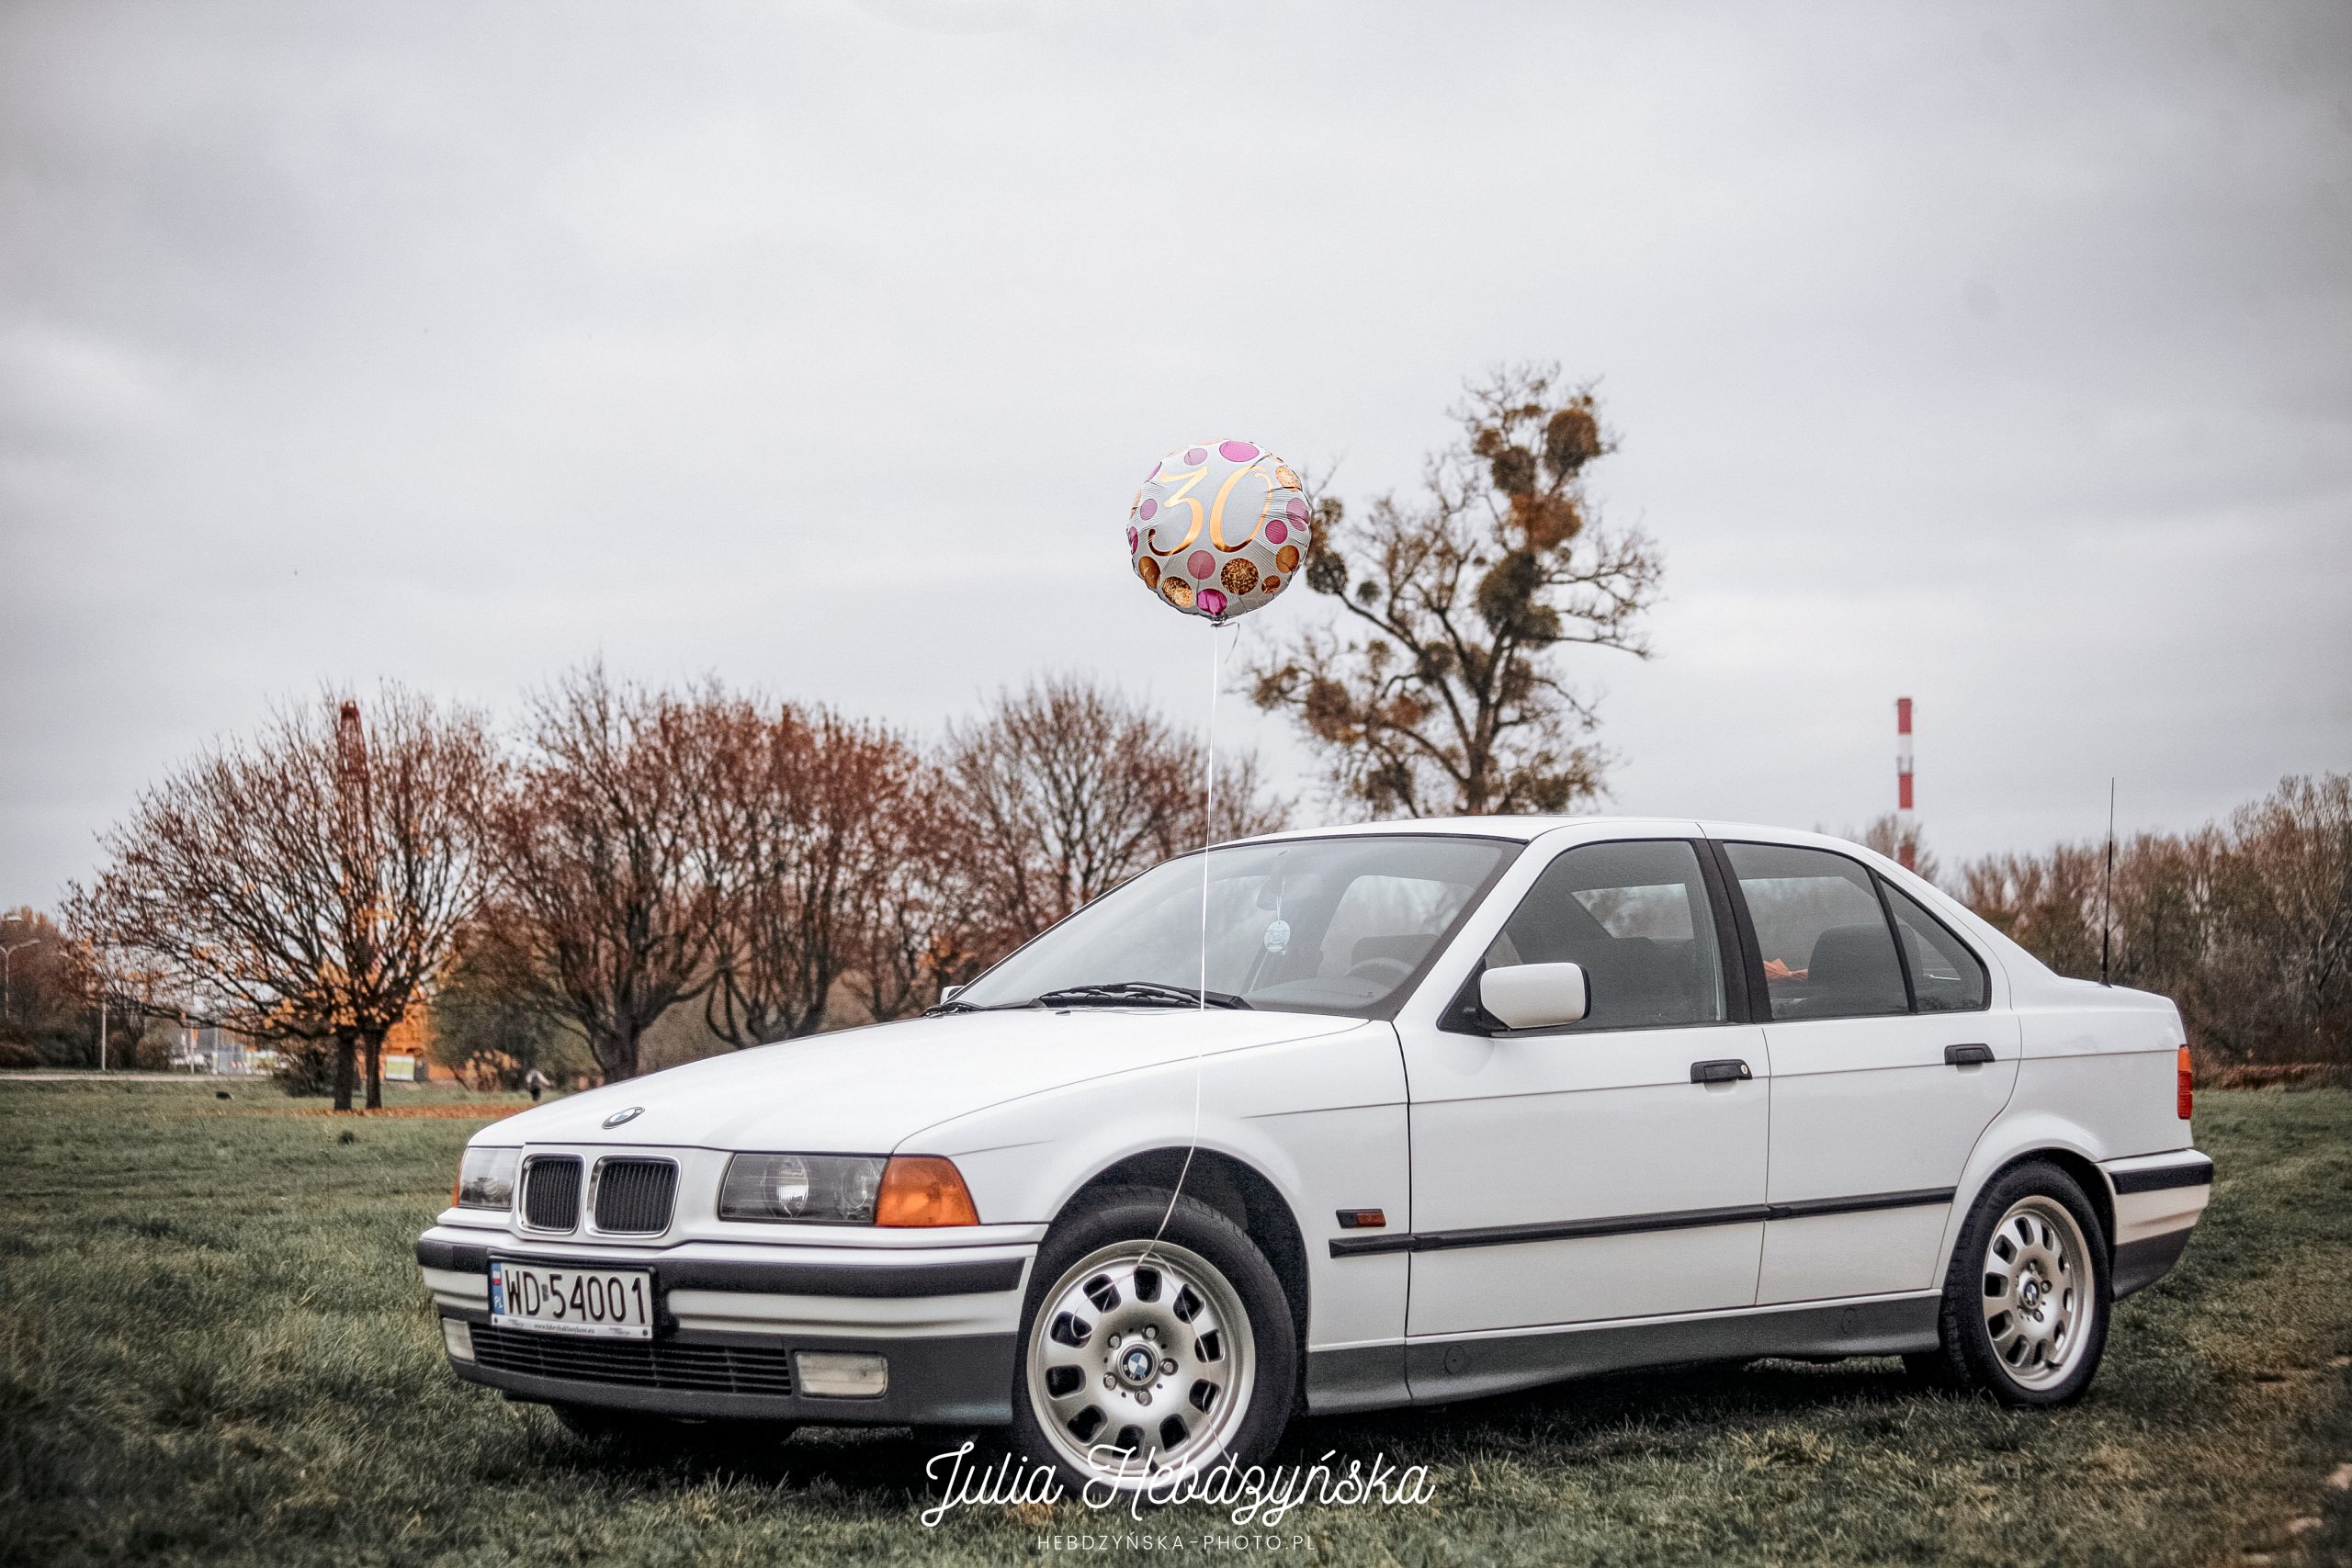 BMW E36 kończy 30 lat. Przynajmniej ten egzemplarz jest zadbany i ma ciekawą historię